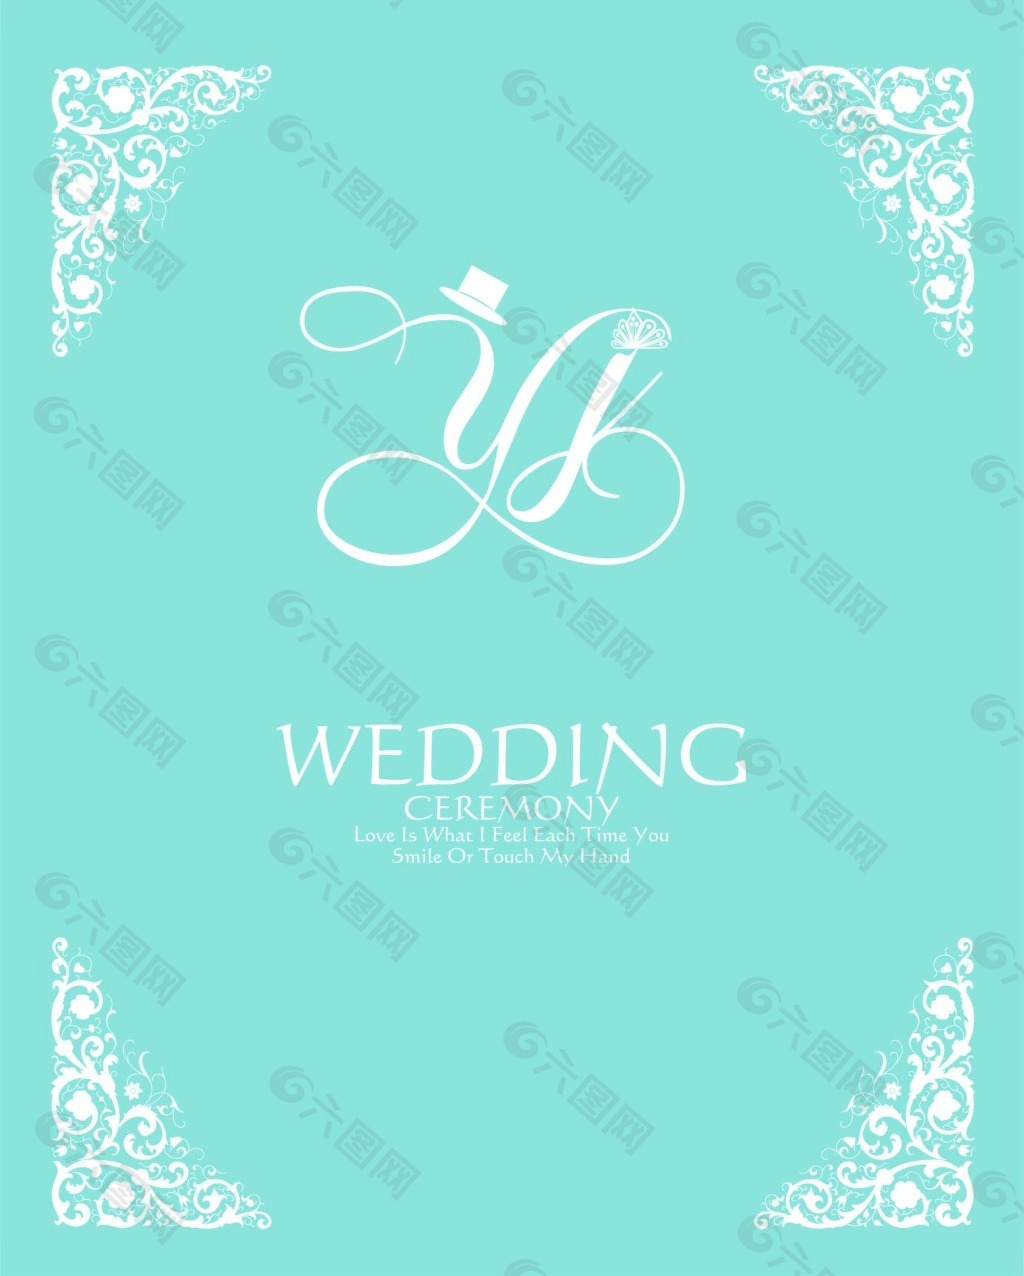 婚礼素材 婚礼logo 主题婚礼